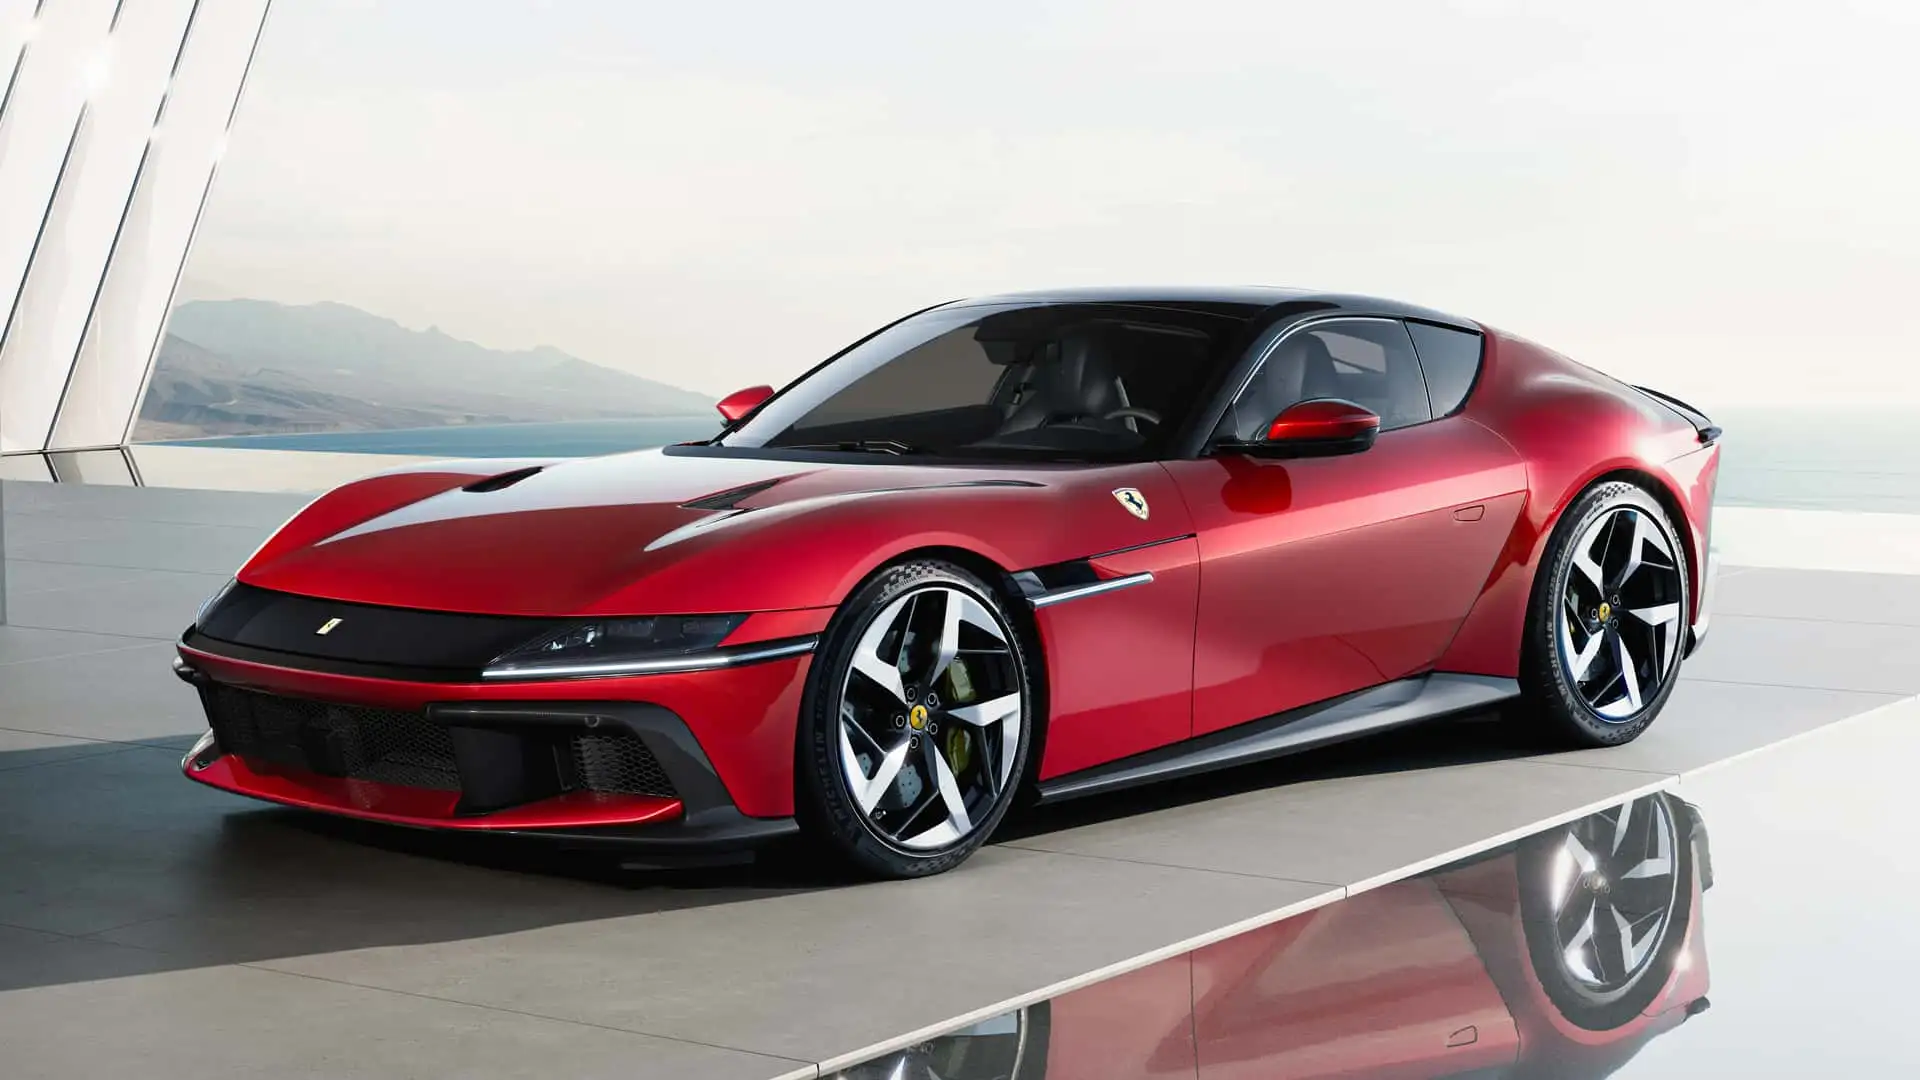 Представлений Ferrari 12Cilindri з 6,5-літровим двигуном V12